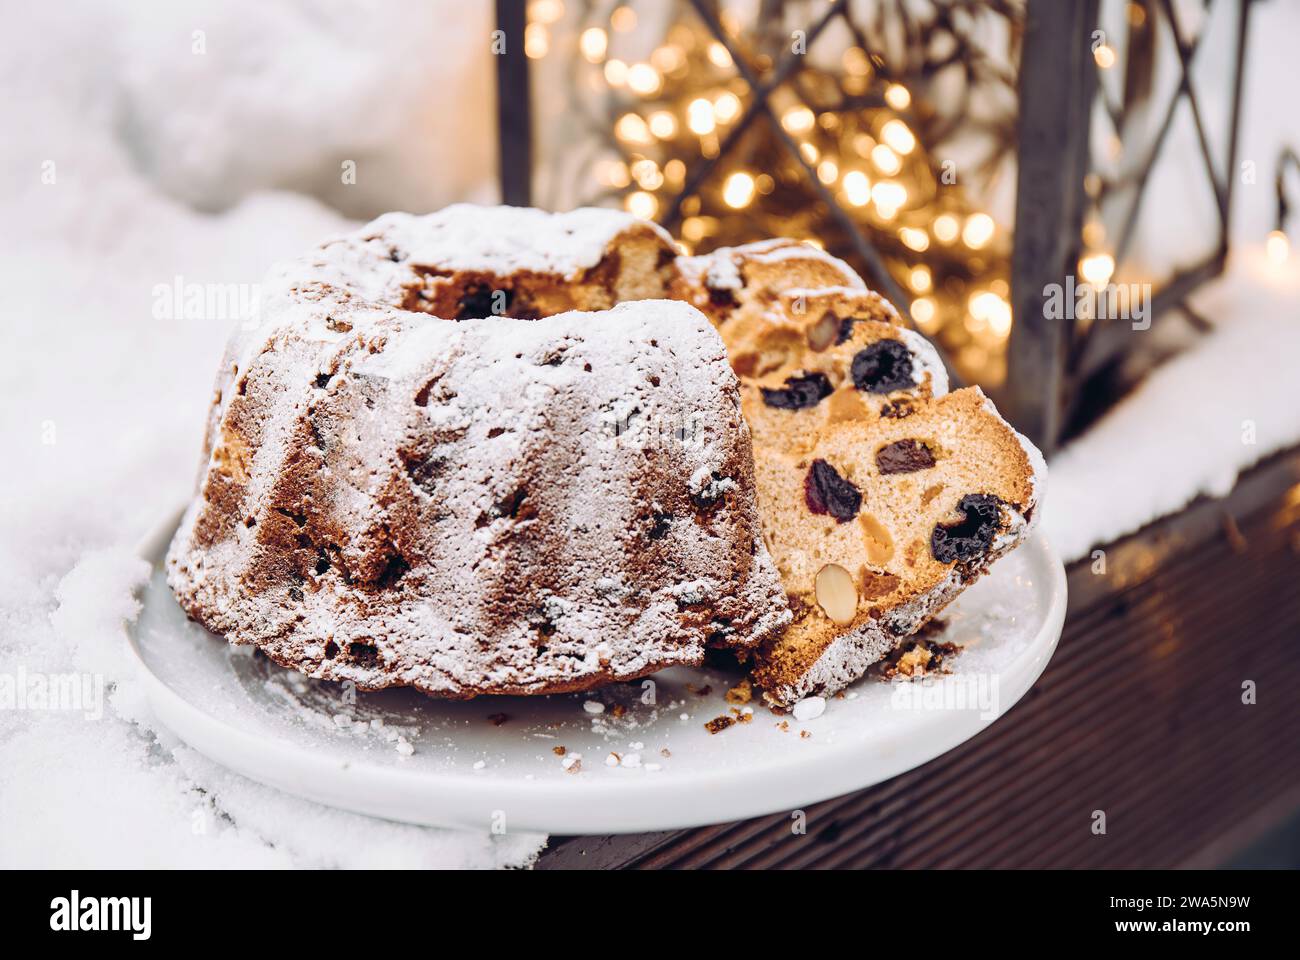 Tradizionale torta natalizia o torta alla frutta con frutta secca sul piatto con pezzi tagliati, neve e luci natalizie sullo sfondo. Foto Stock